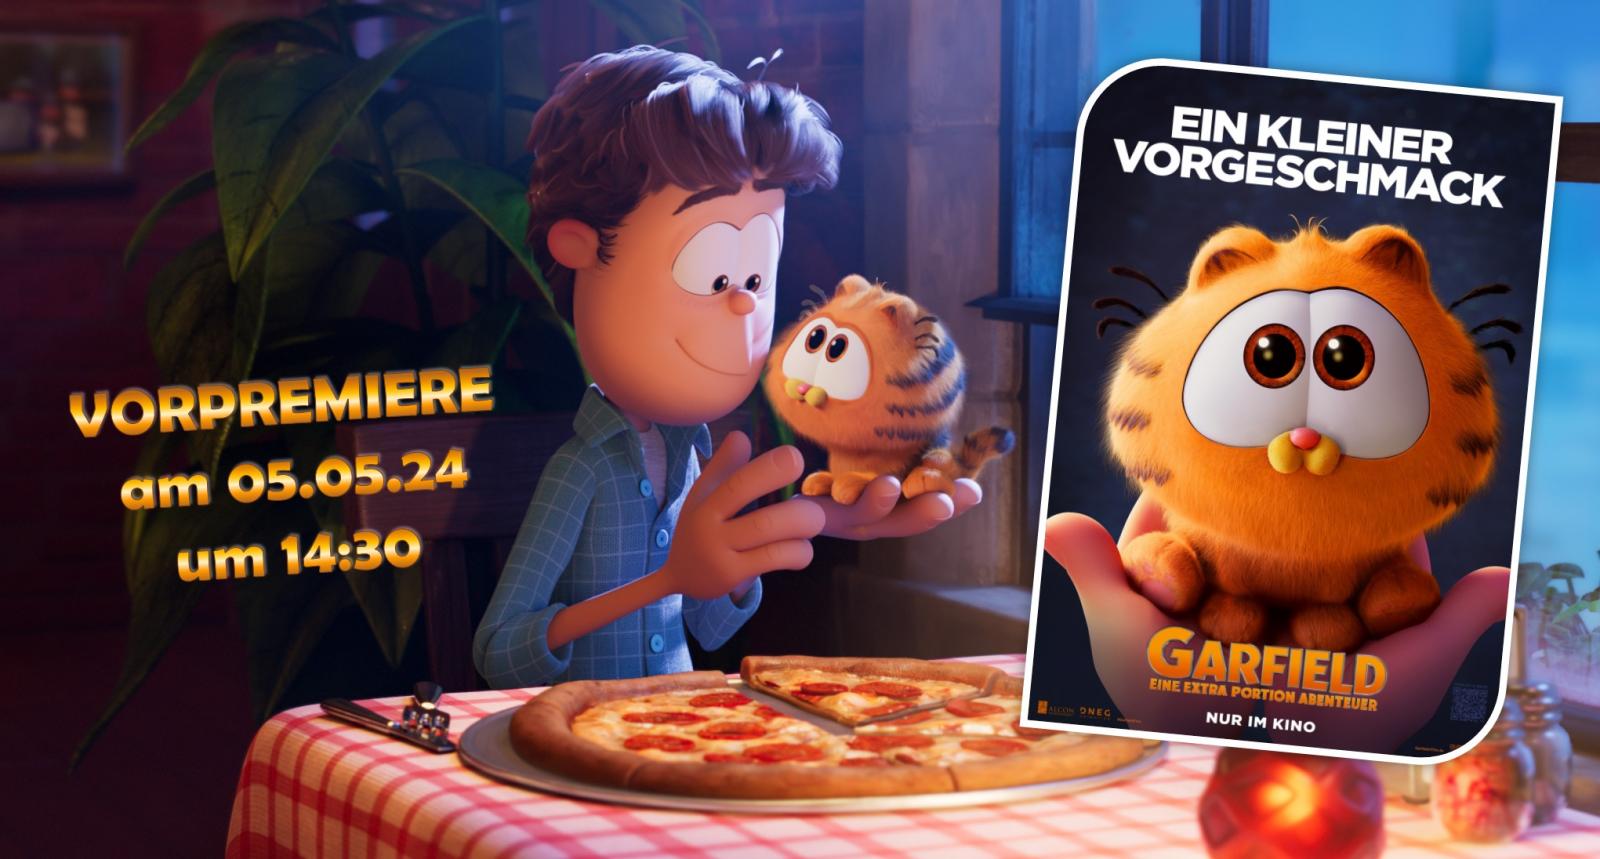 VORPREMIERE FÜR DIE GANZE FAMILIE: "Garfield - Eine Extra Portion Abenteuer" am 05.05.24 bei uns!